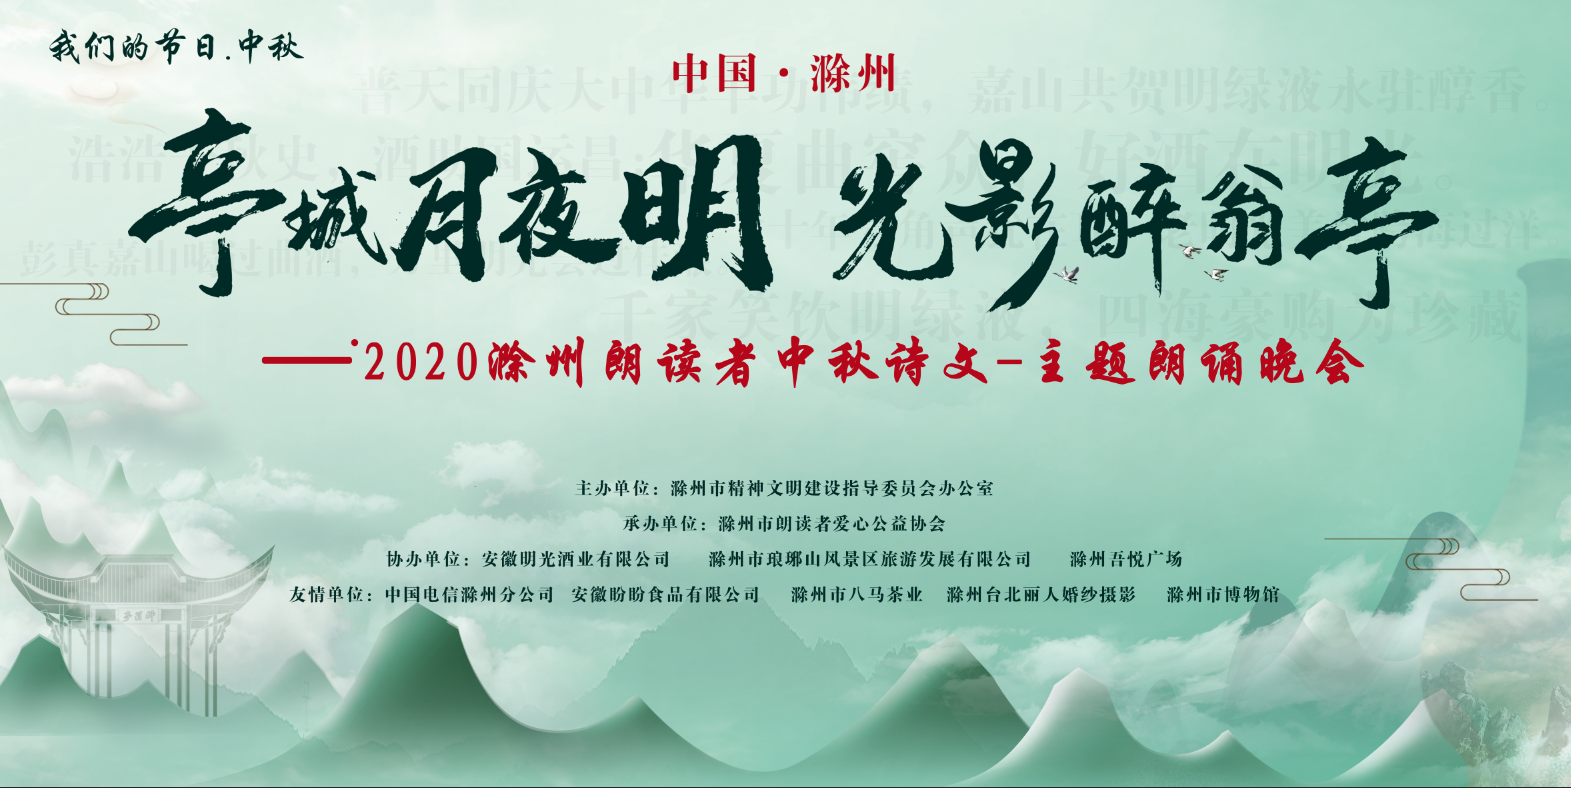 “老明光”之夜-2020滁州朗读者中秋诗文主题朗诵晚会